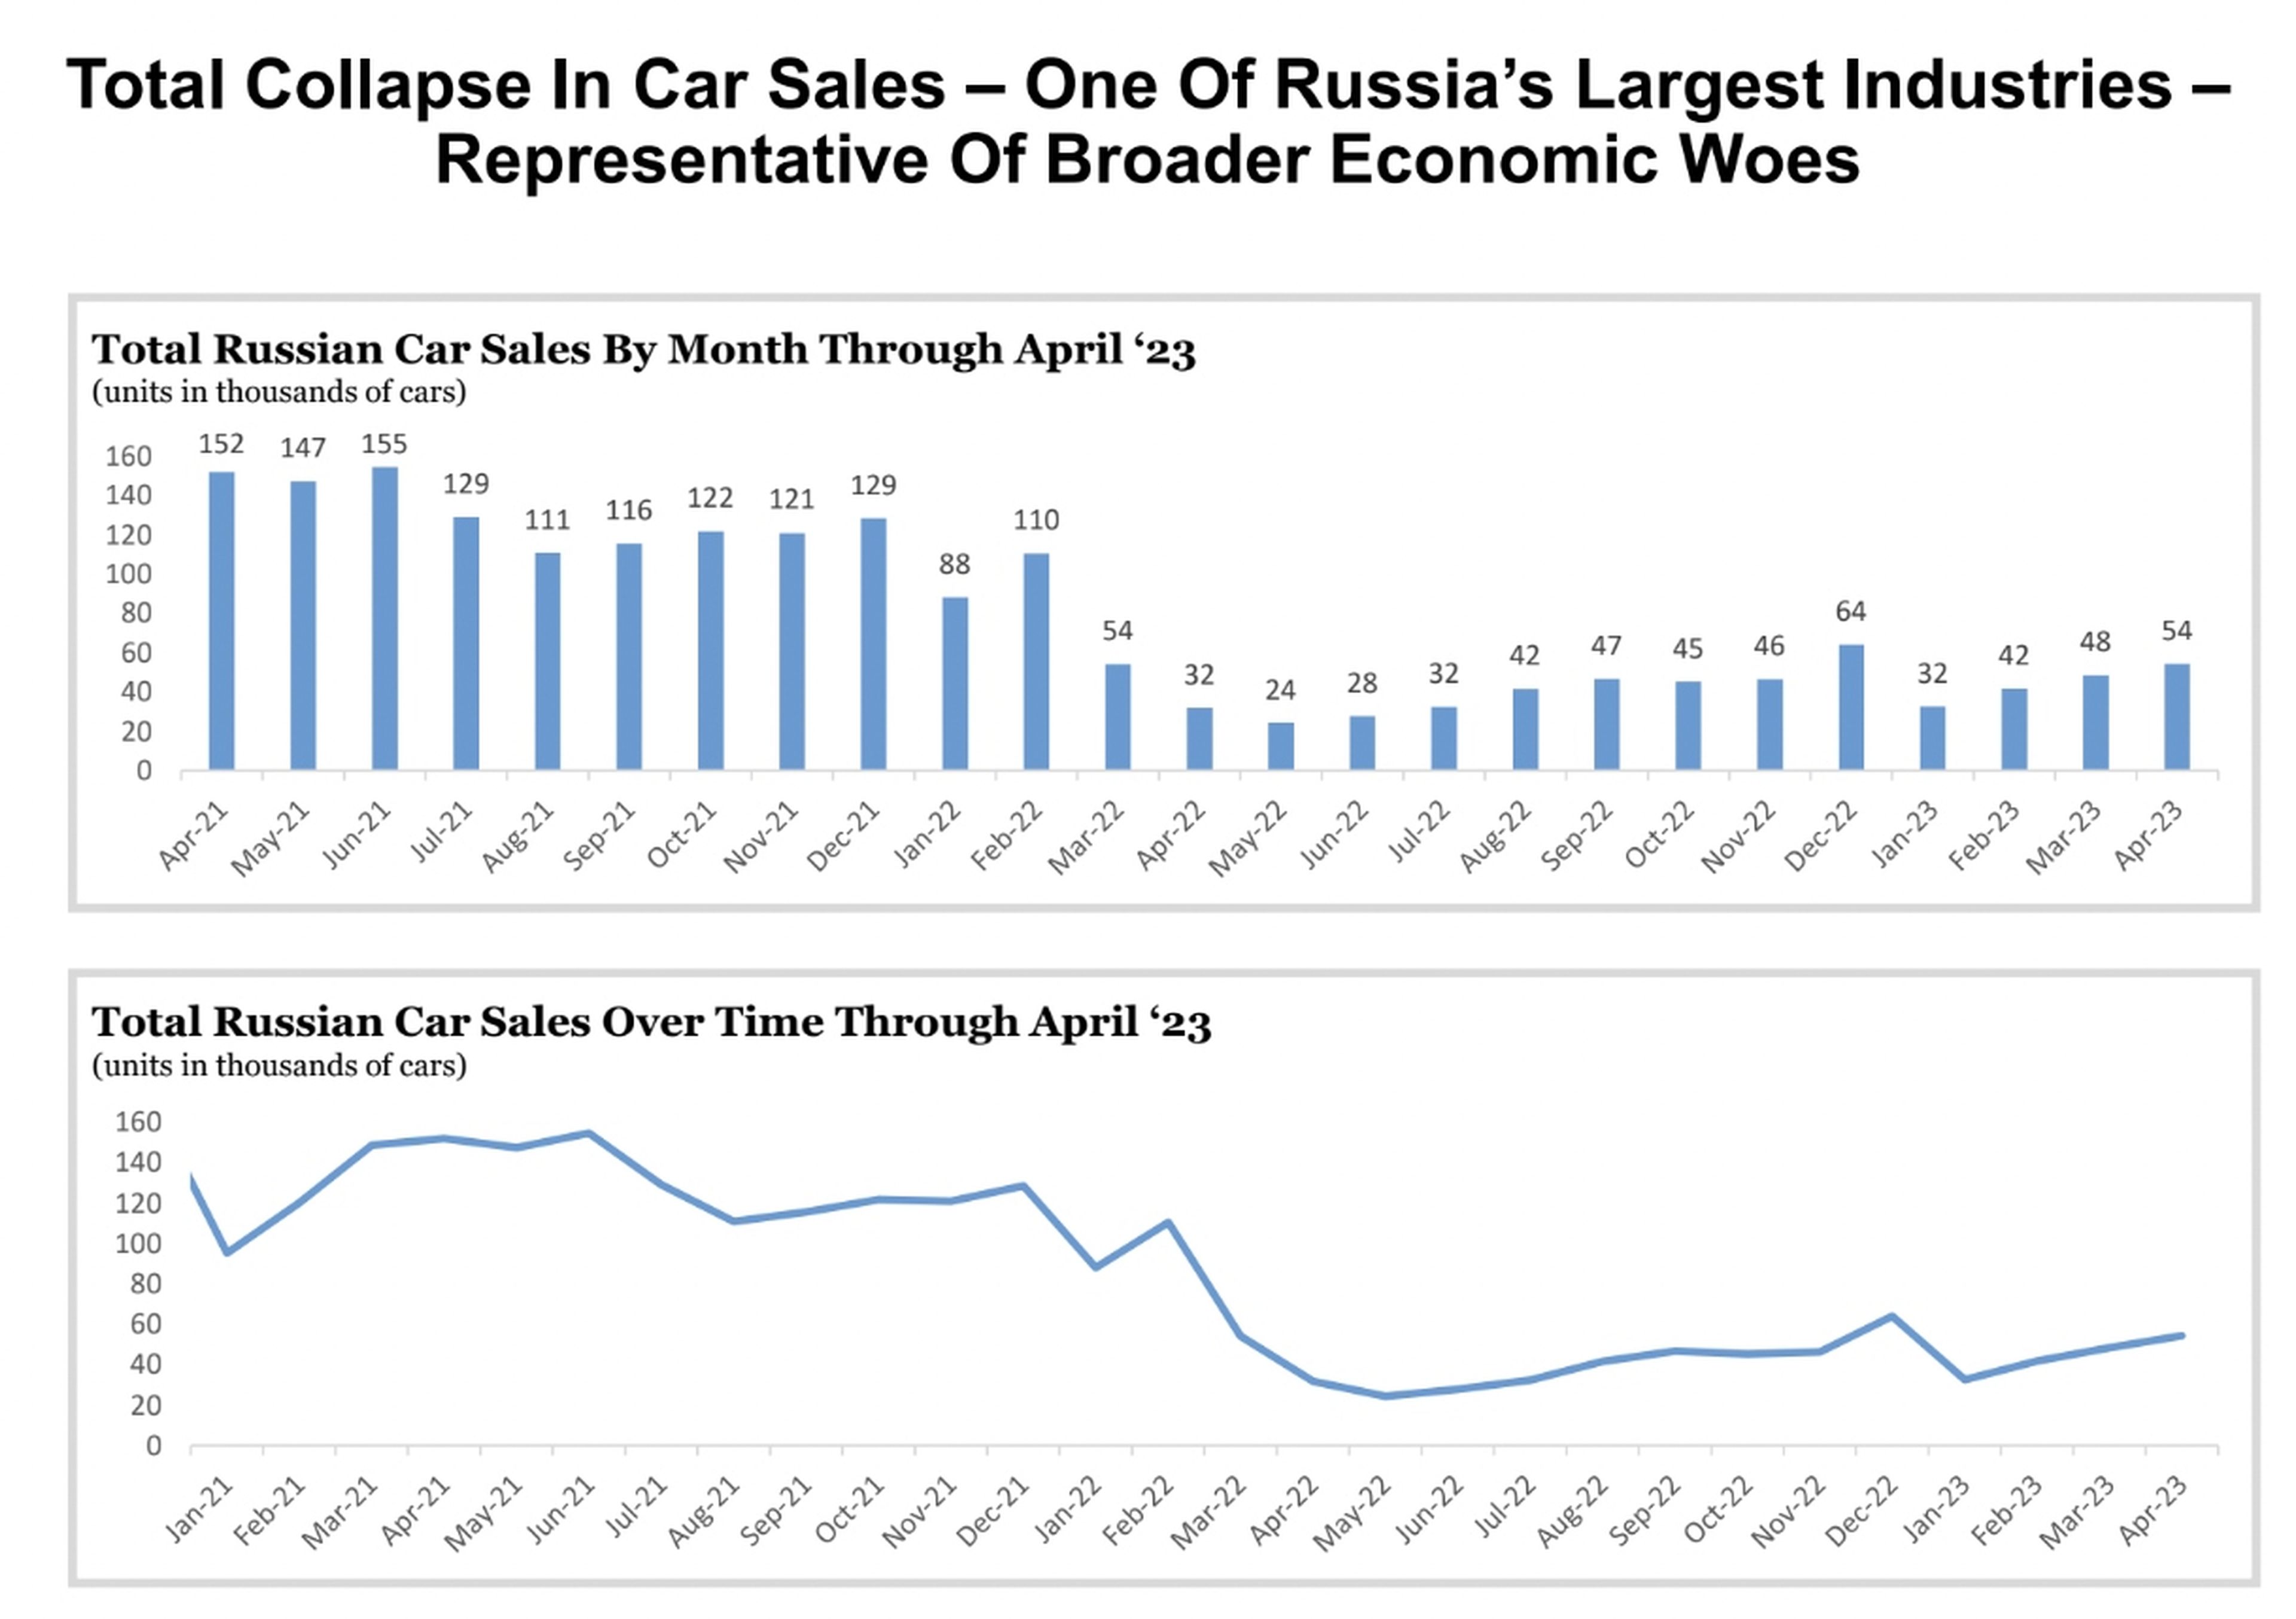 En Rusia se ha producido un desplome total de las ventas de automóviles en el último año y medio.